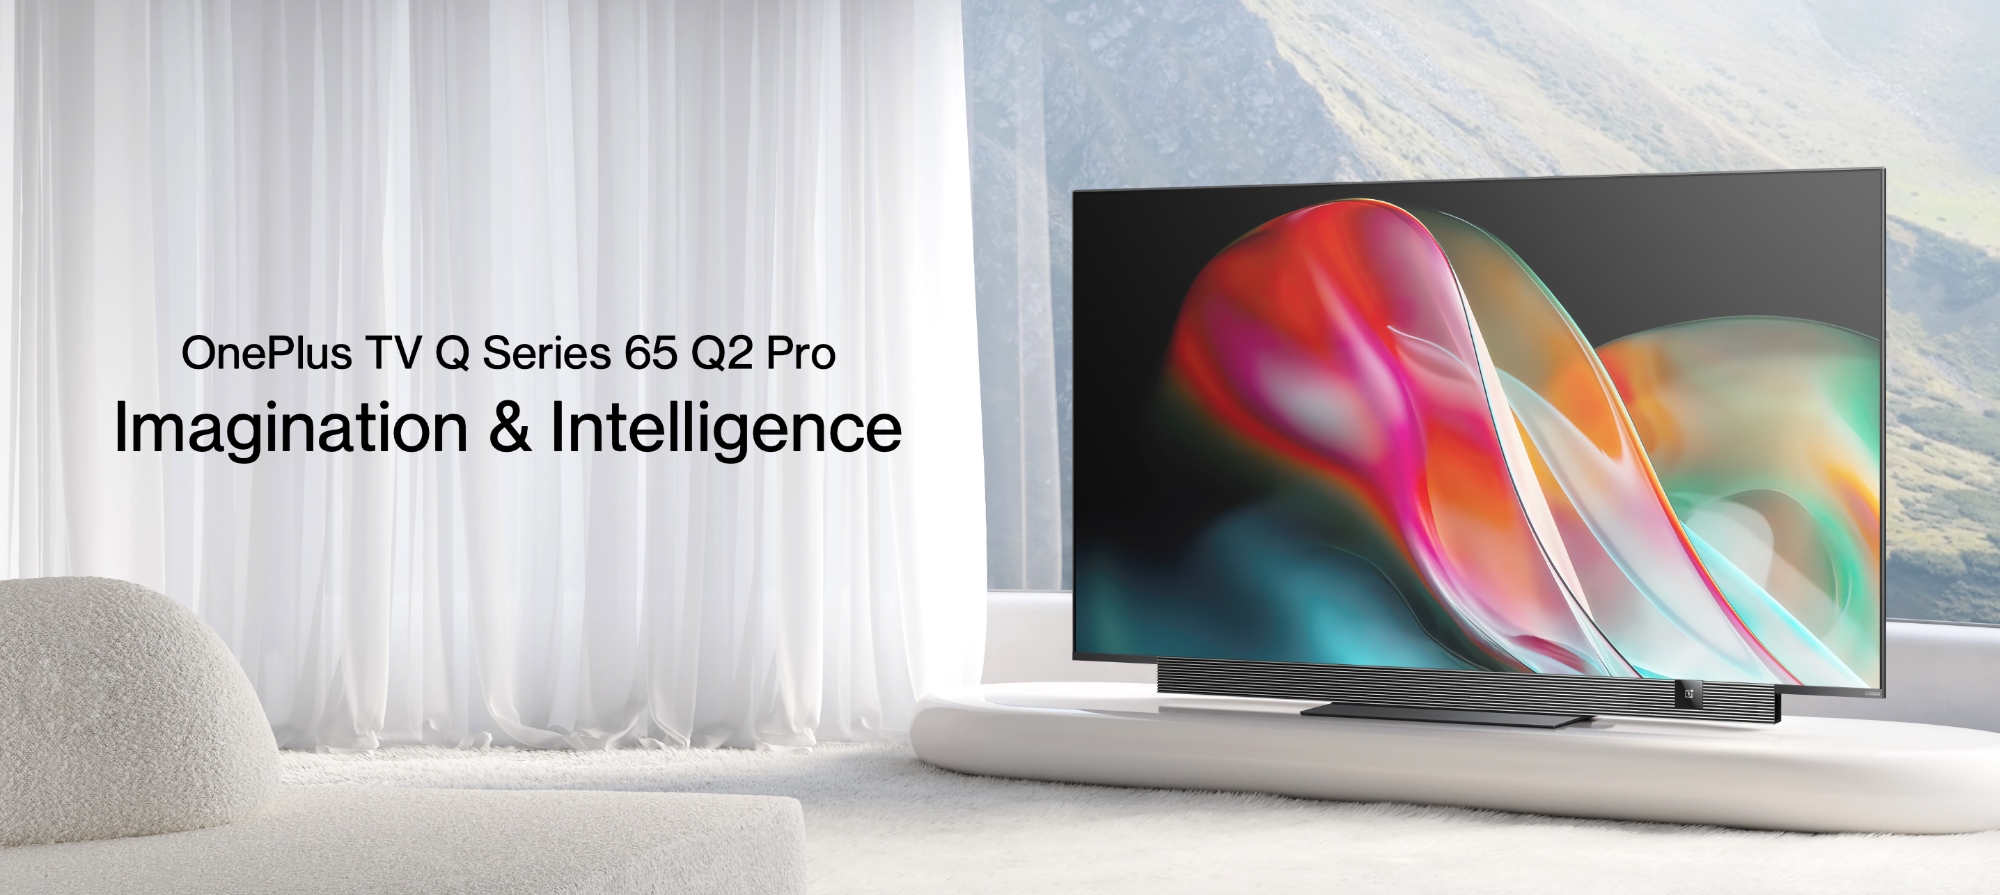 OnePlus TV 65 Q2 Pro: 4K QLED-Display mit 120 Hz, 70-W-Lautsprecher, Dolby Vision-Unterstützung und Android TV für 1209 $